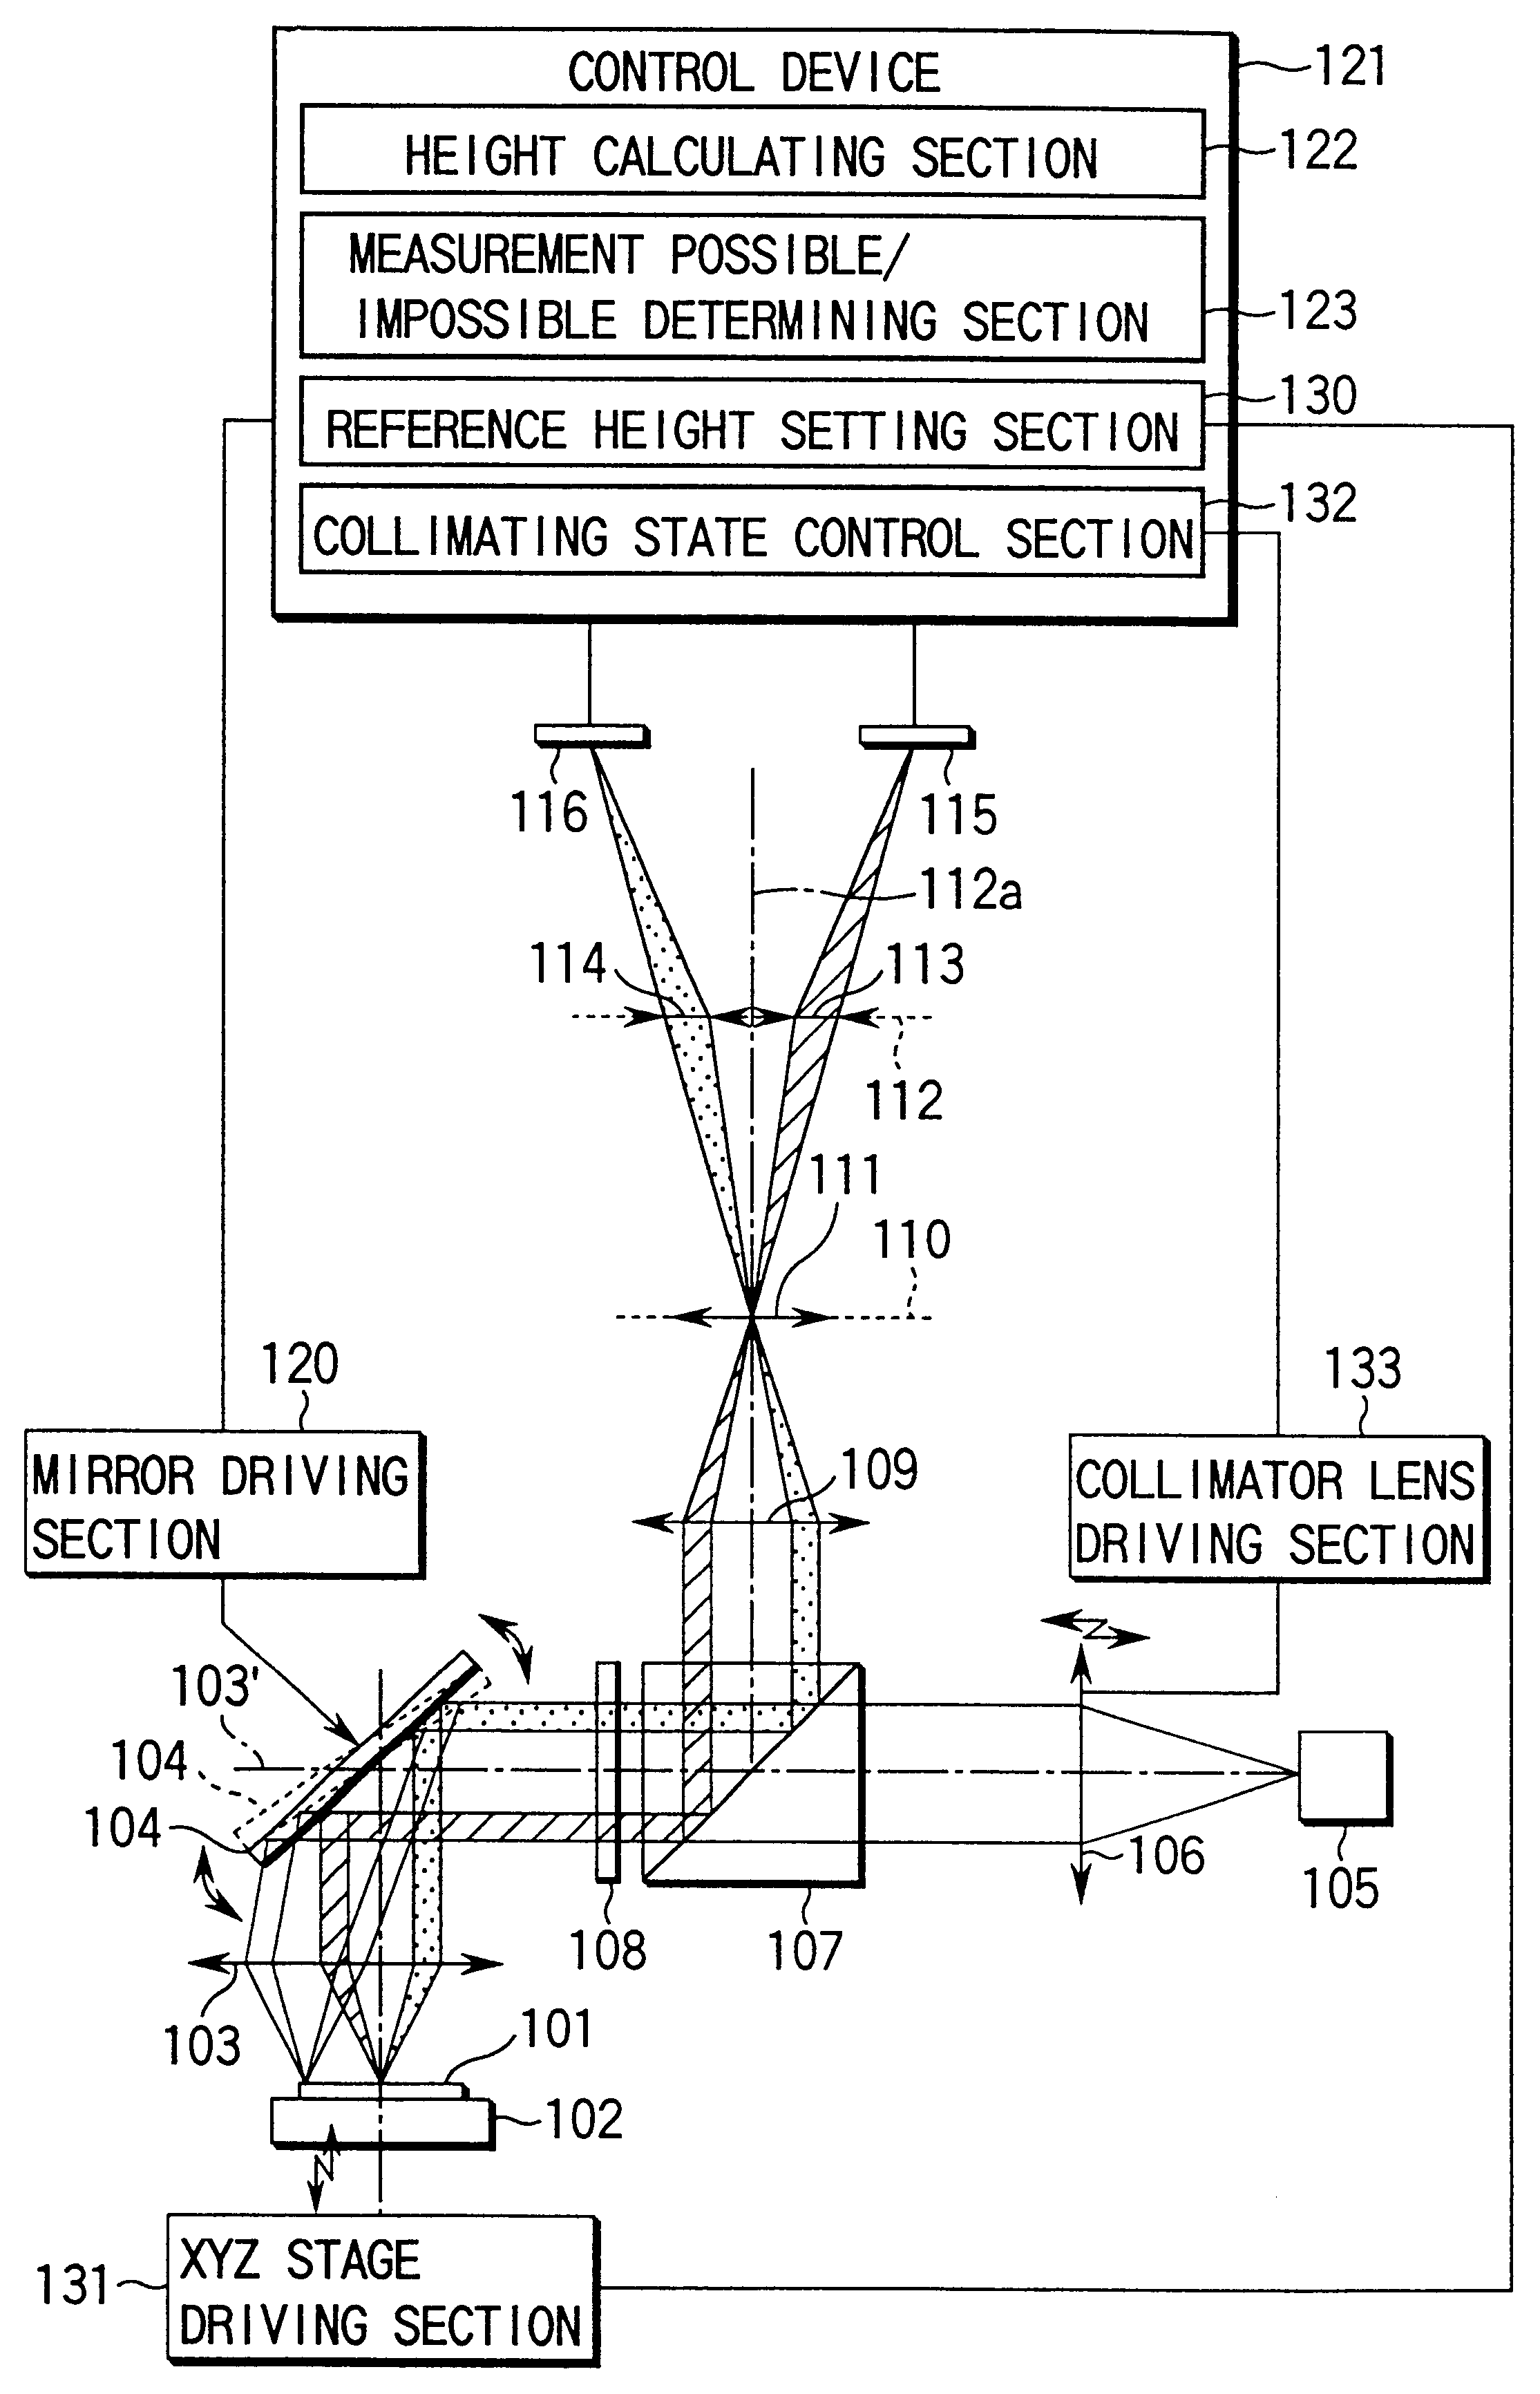 Height measuring apparatus